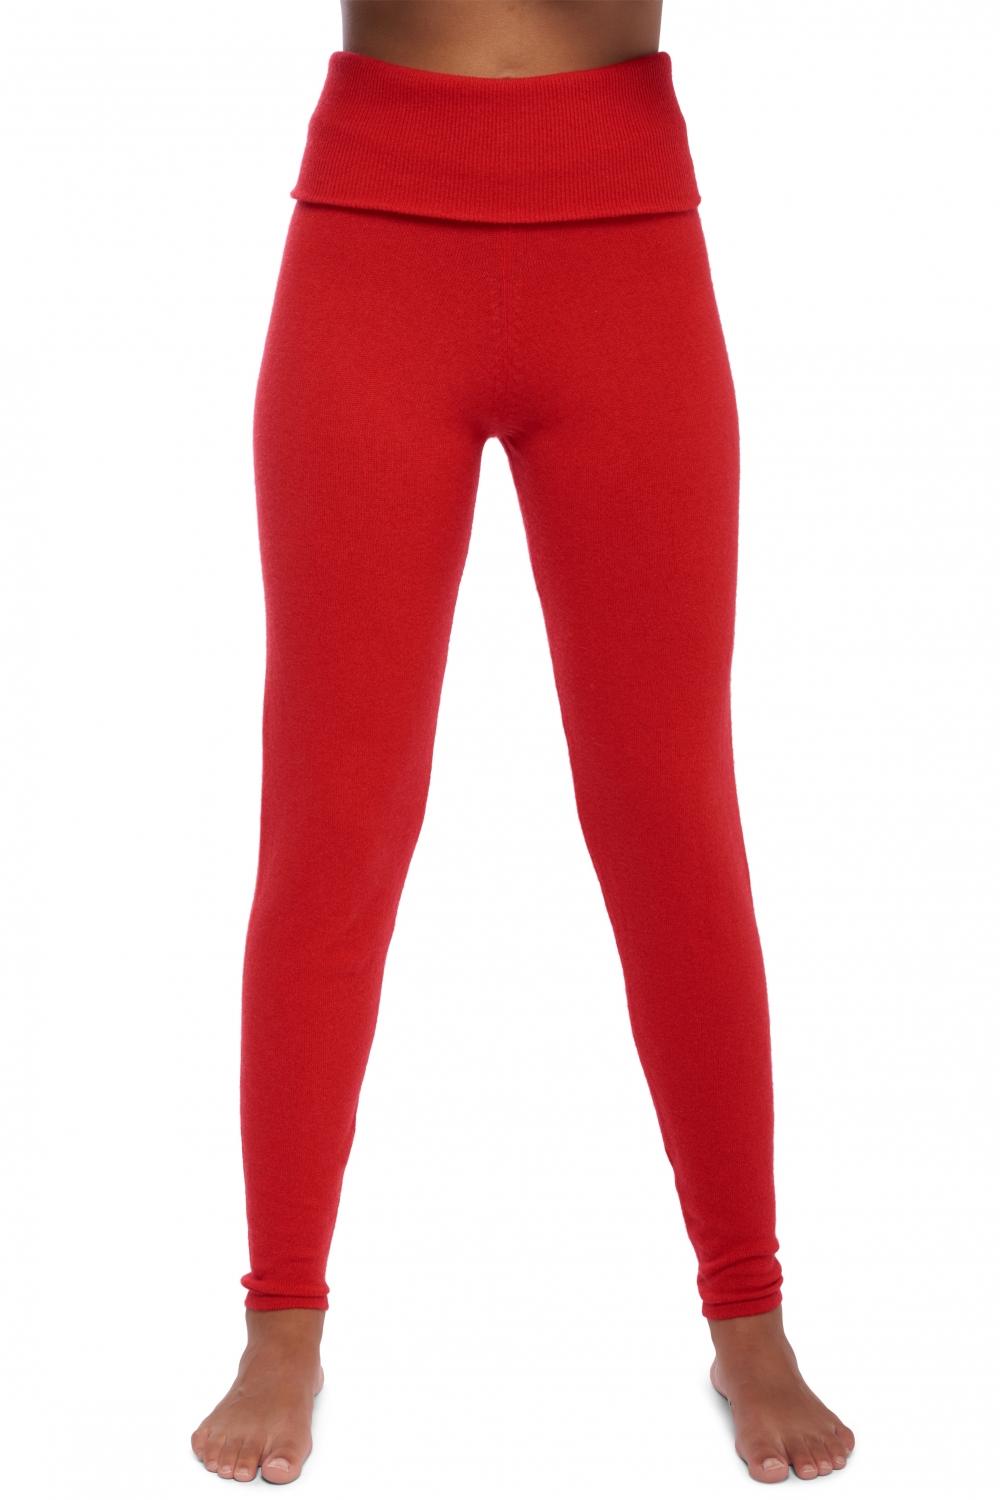 Cachemire pantalon legging femme shirley rouge 2xl